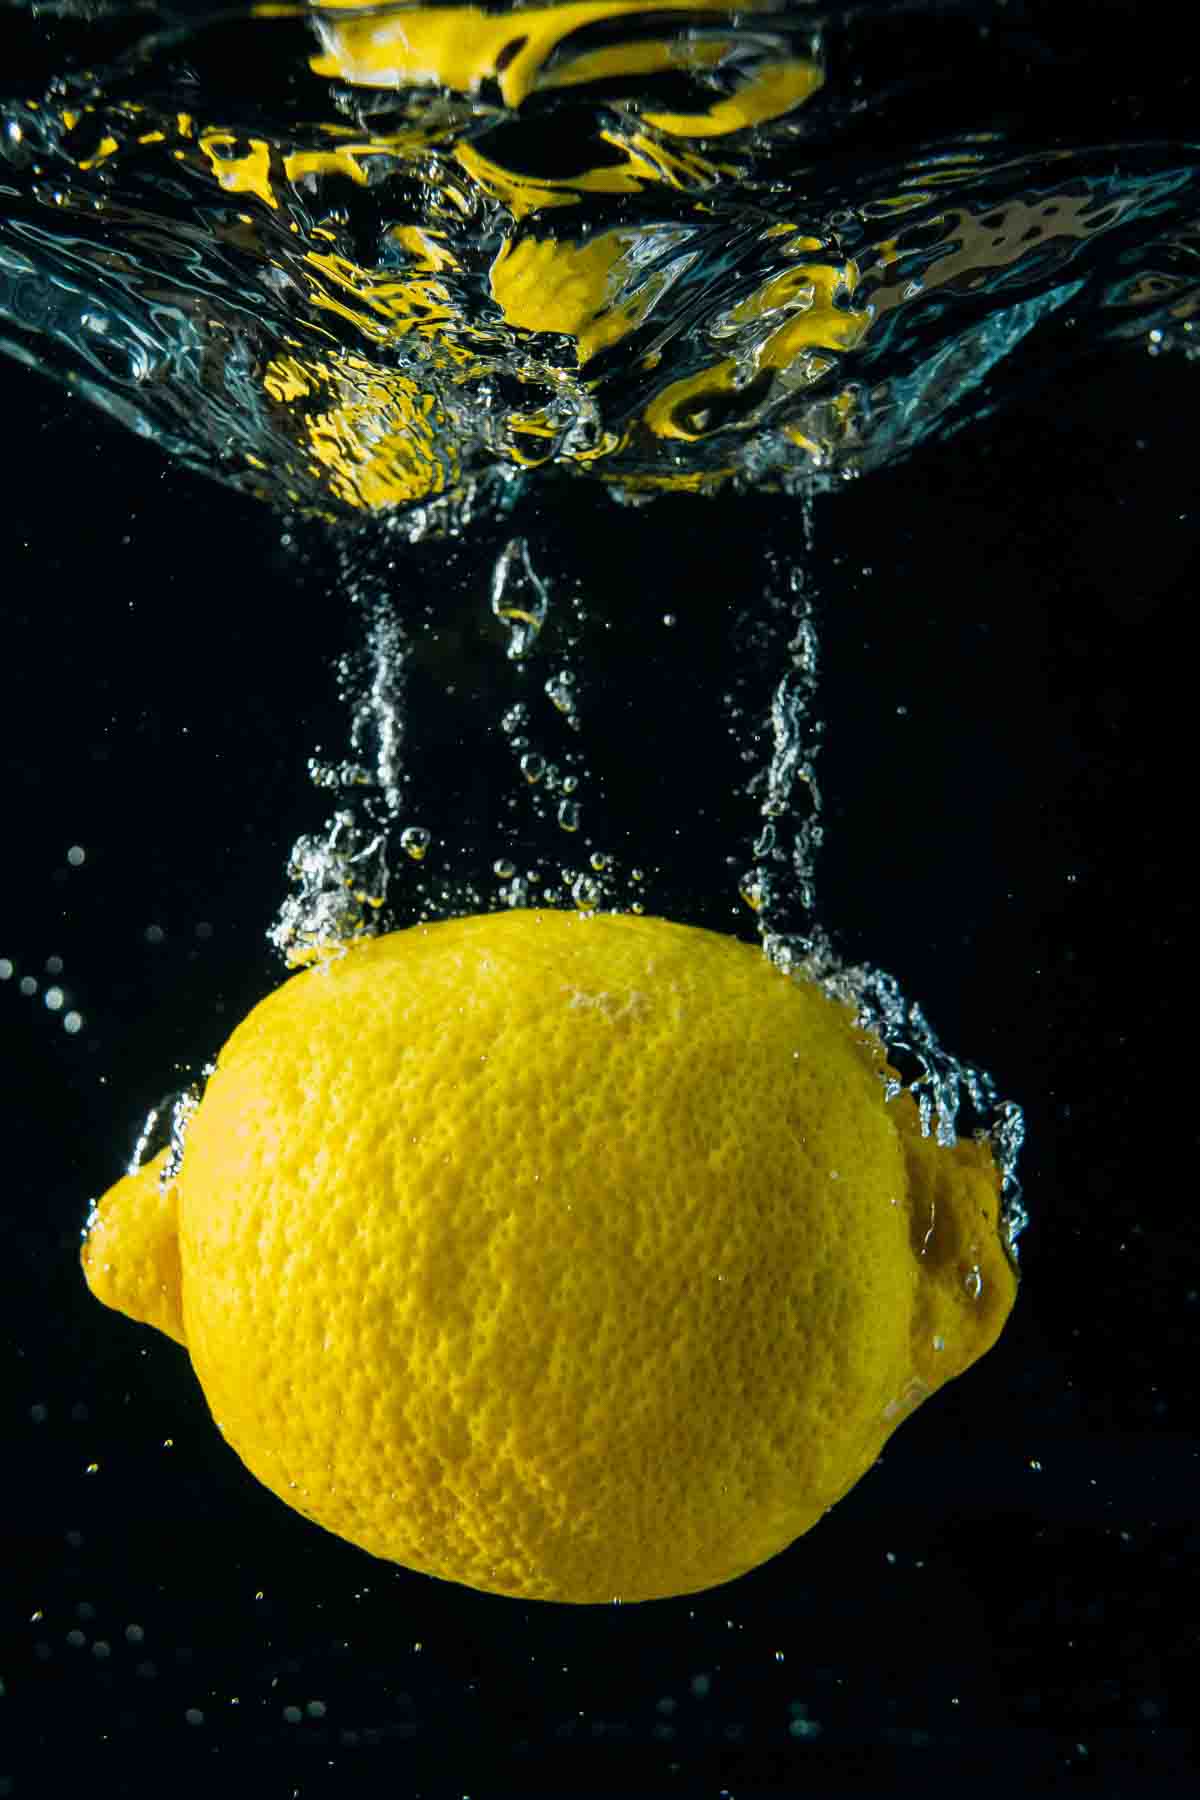 Whole lemon inside water.